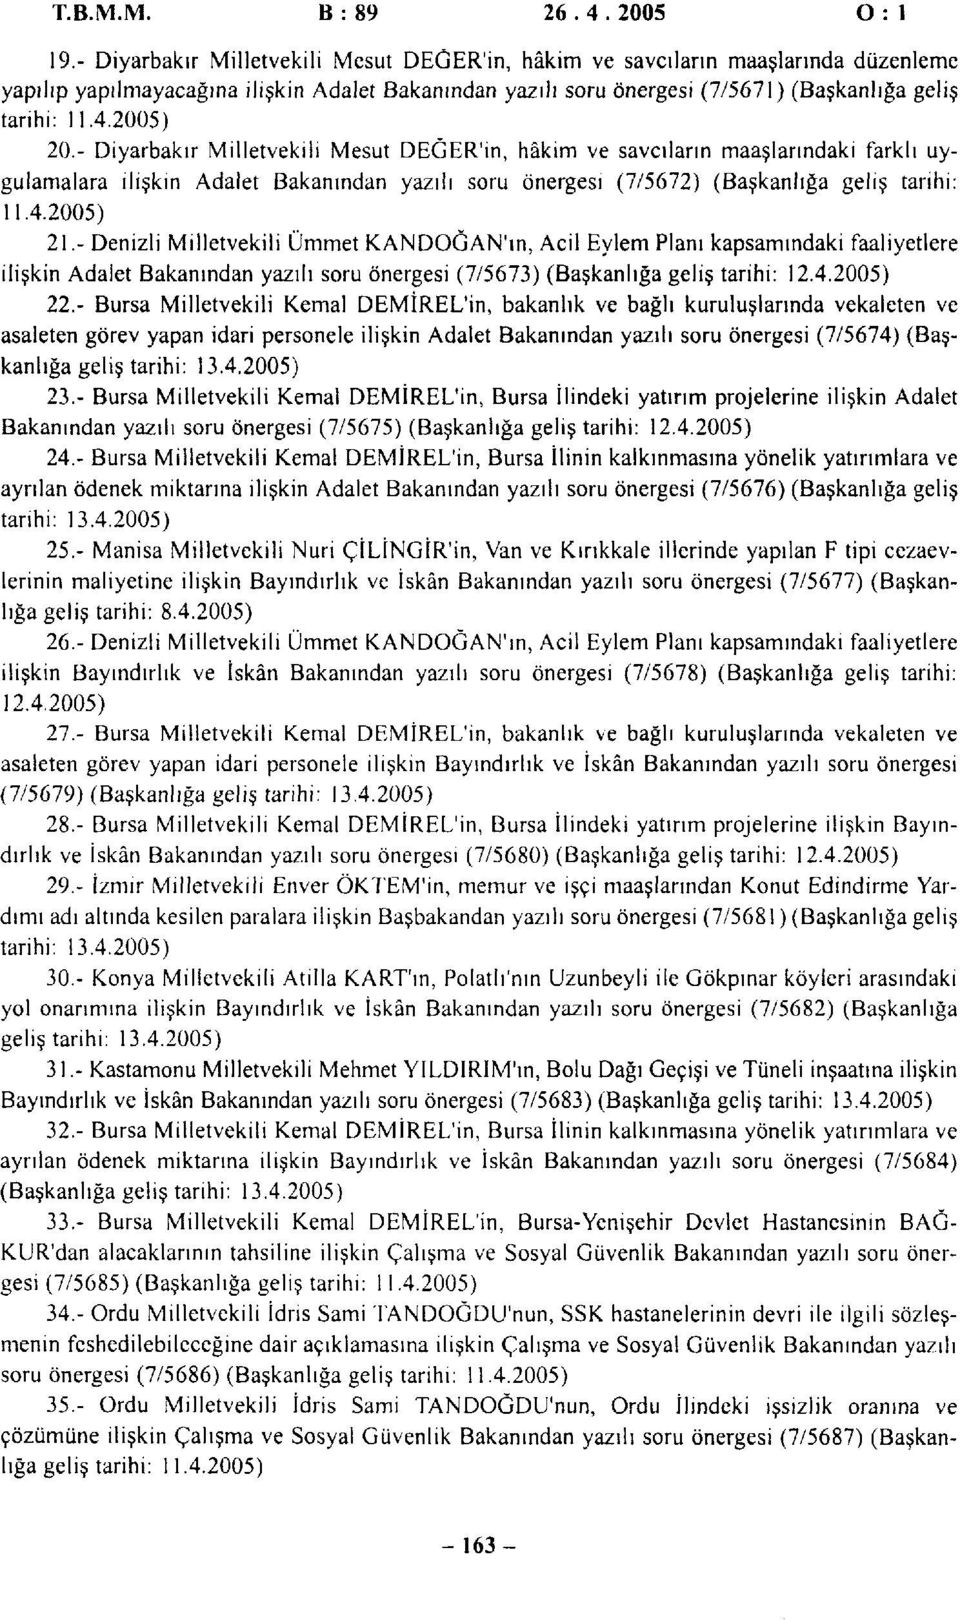 2005) 20.- Diyarbakır Milletvekili Mesut DEGER'in, hâkim ve savcıların maaşlarındaki farklı uygulamalara ilişkin Adalet Bakanından yazılı soru önergesi (7/5672) (Başkanlığa geliş tarihi: 11.4.